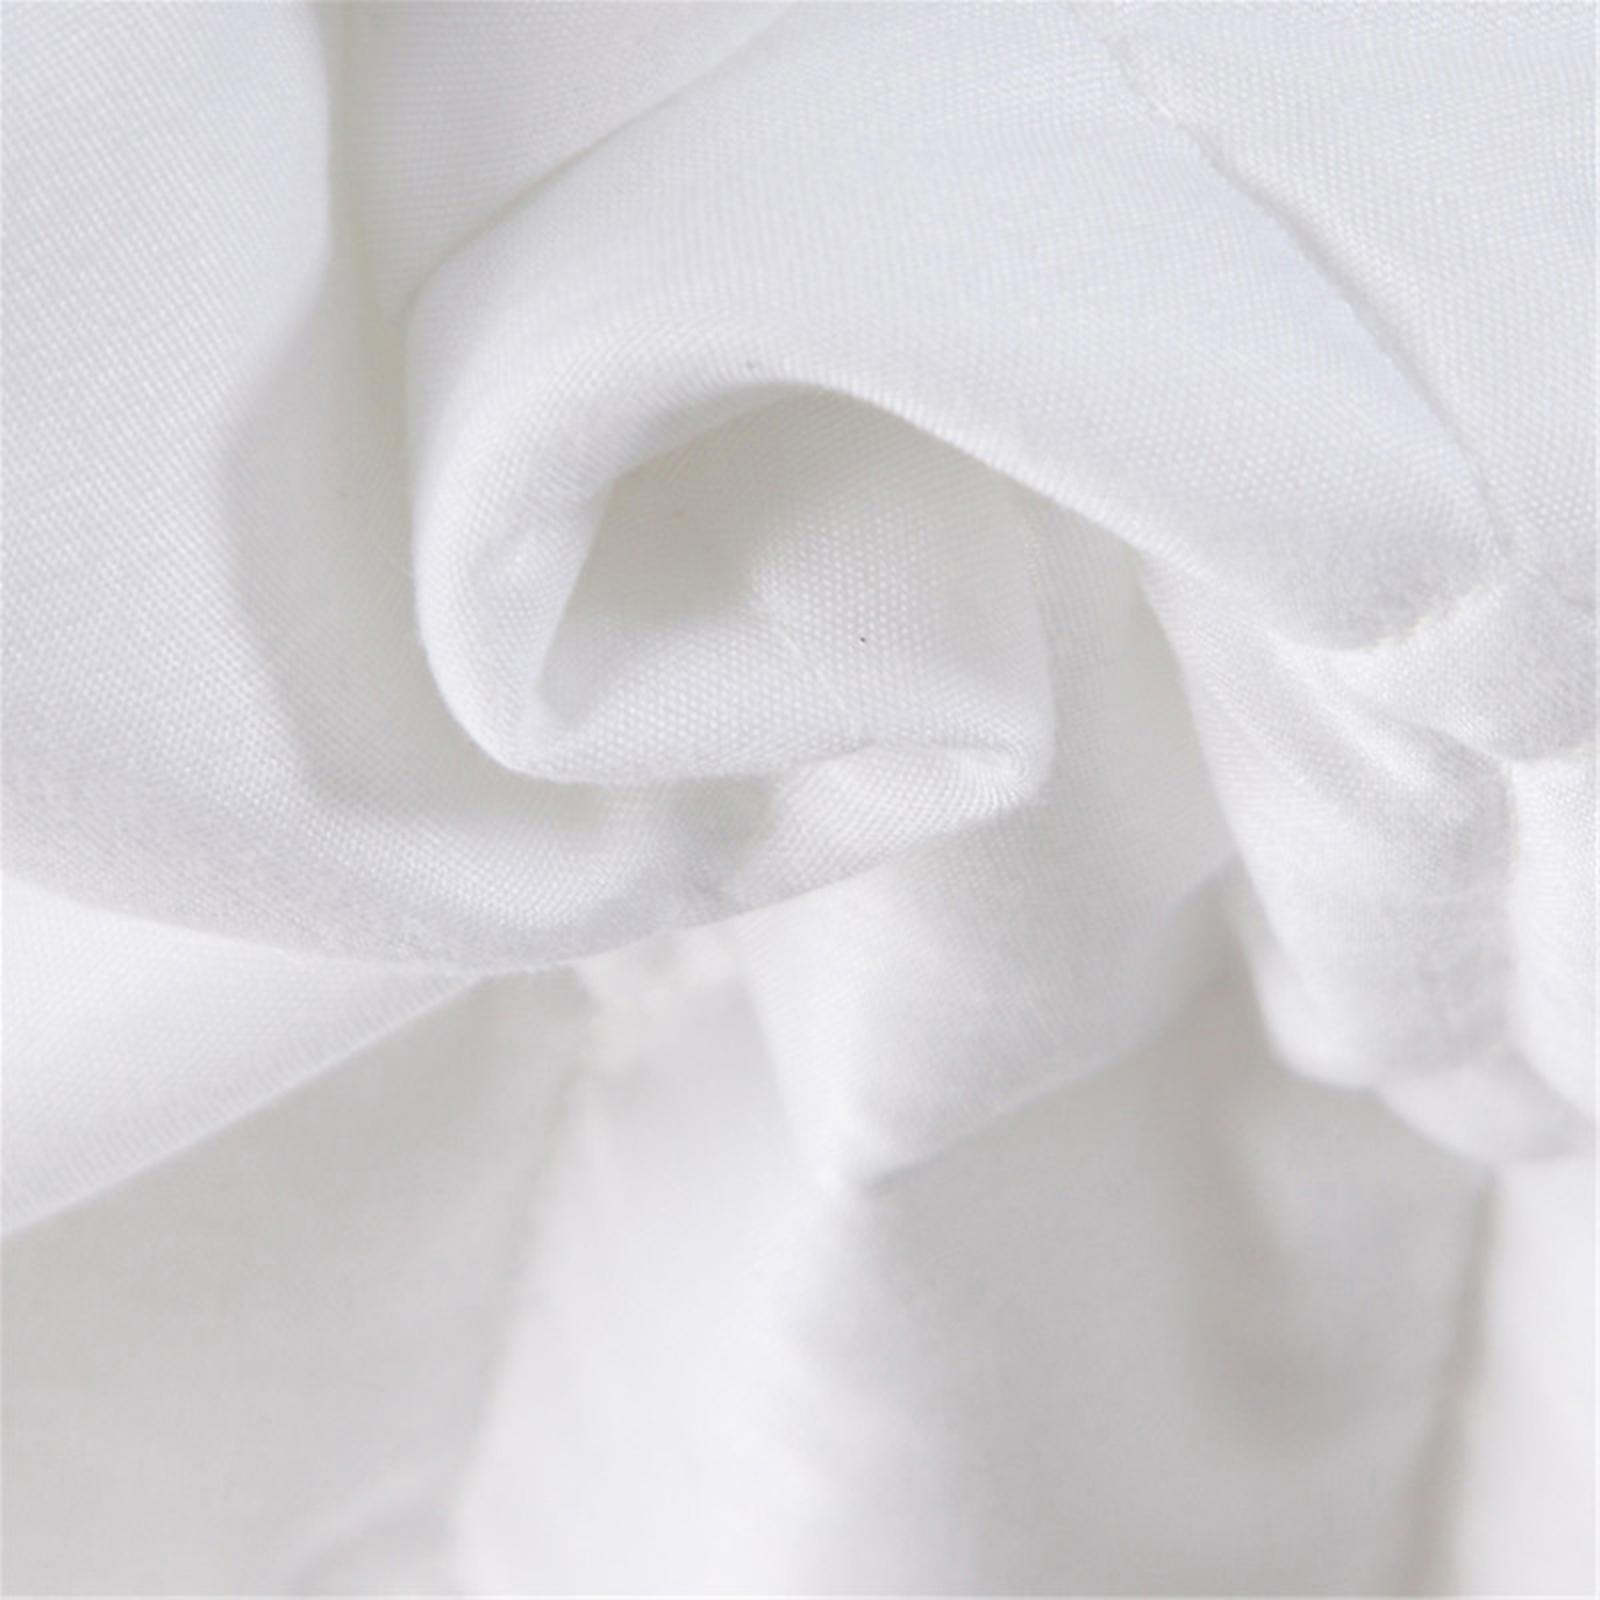 Massage Table Skirt Cover Sheet Pillowcase Stool Cover Beauty Bedding White